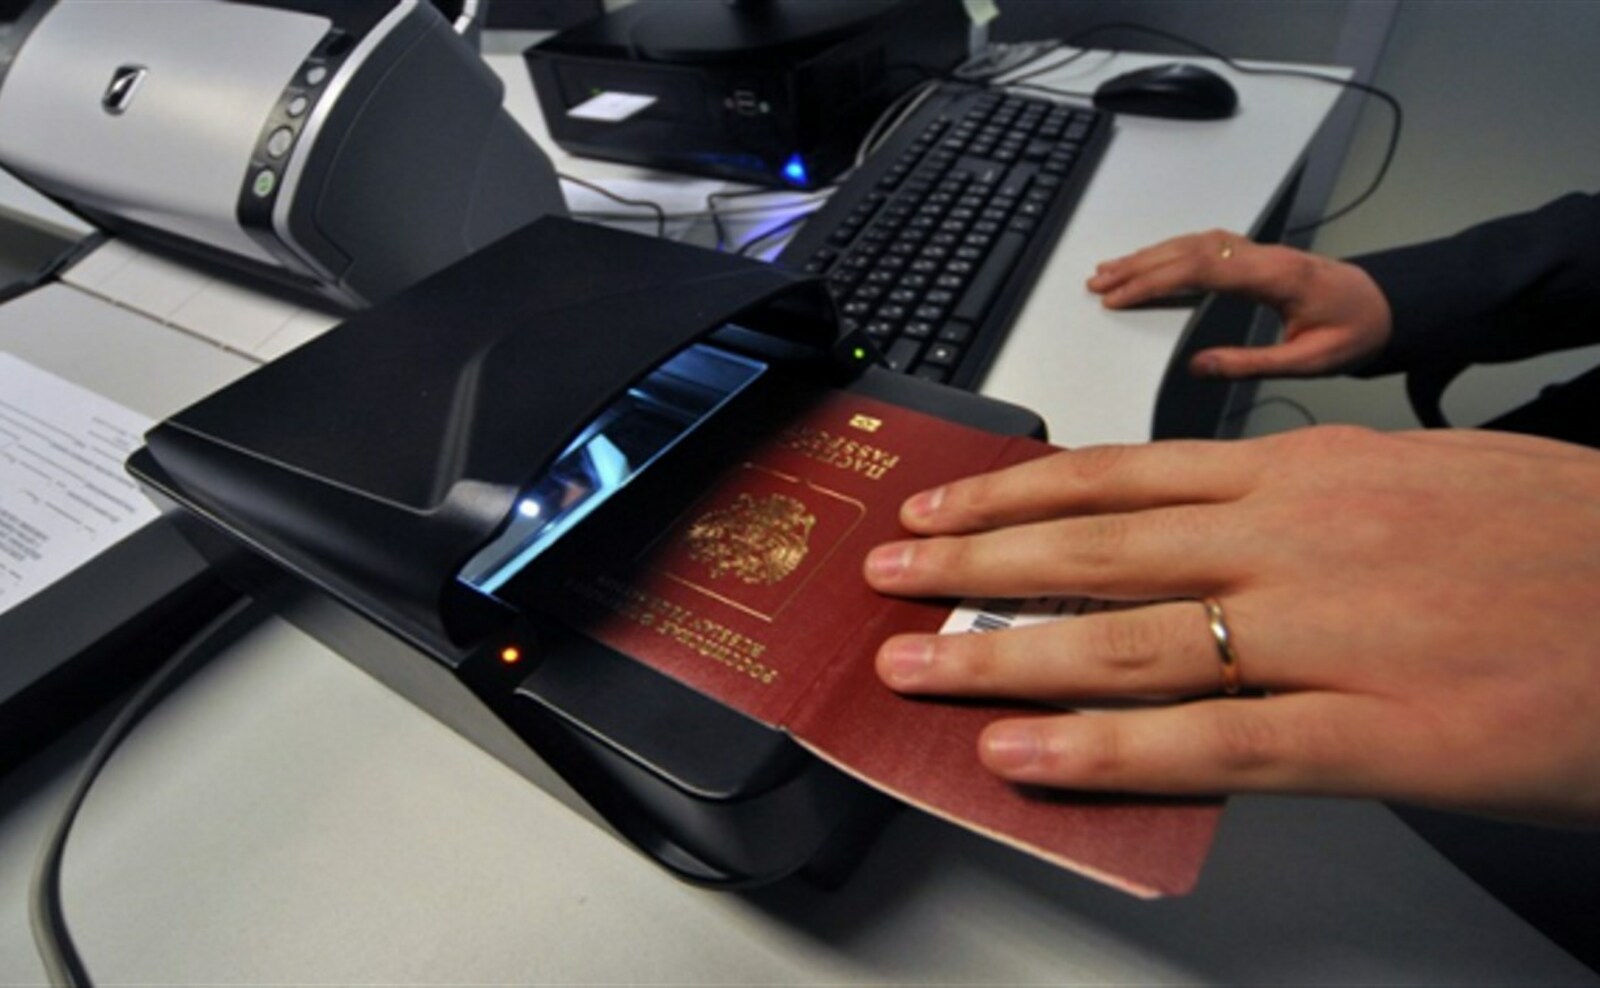 Мужчина предоставил ксерокопию паспорта, а через 2 года узнал, что на него взяли кредит! Как избежать такого?